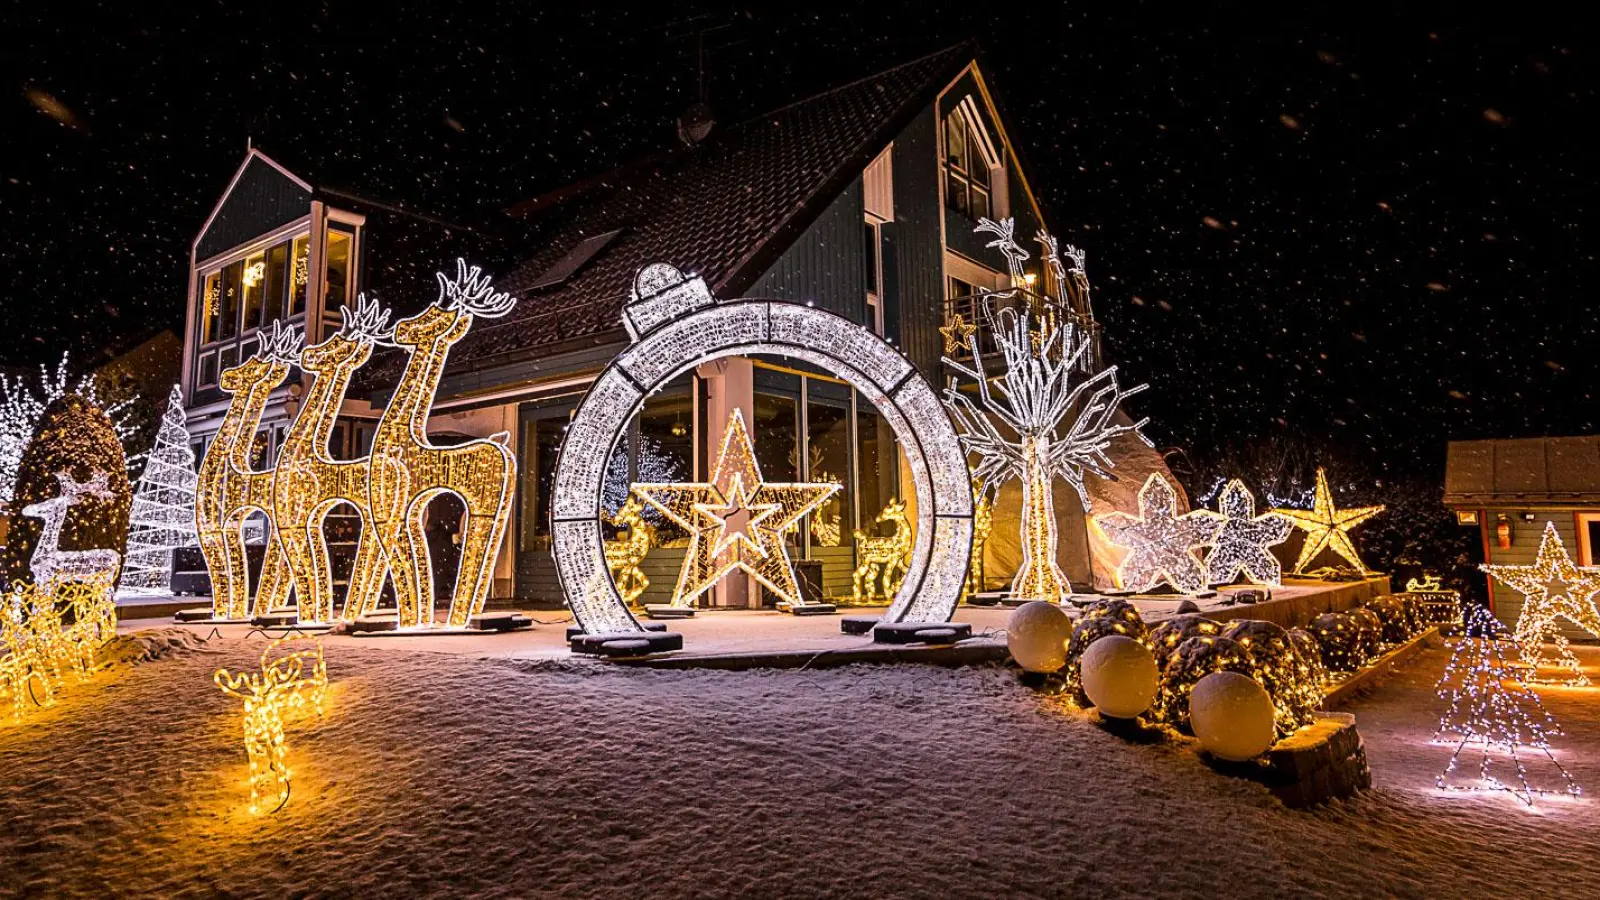 Das Weihnachtshaus in Wiedenzhausen erstrahlt wieder im hellen Lichterglanz. (Foto: Stefan Gerlach)